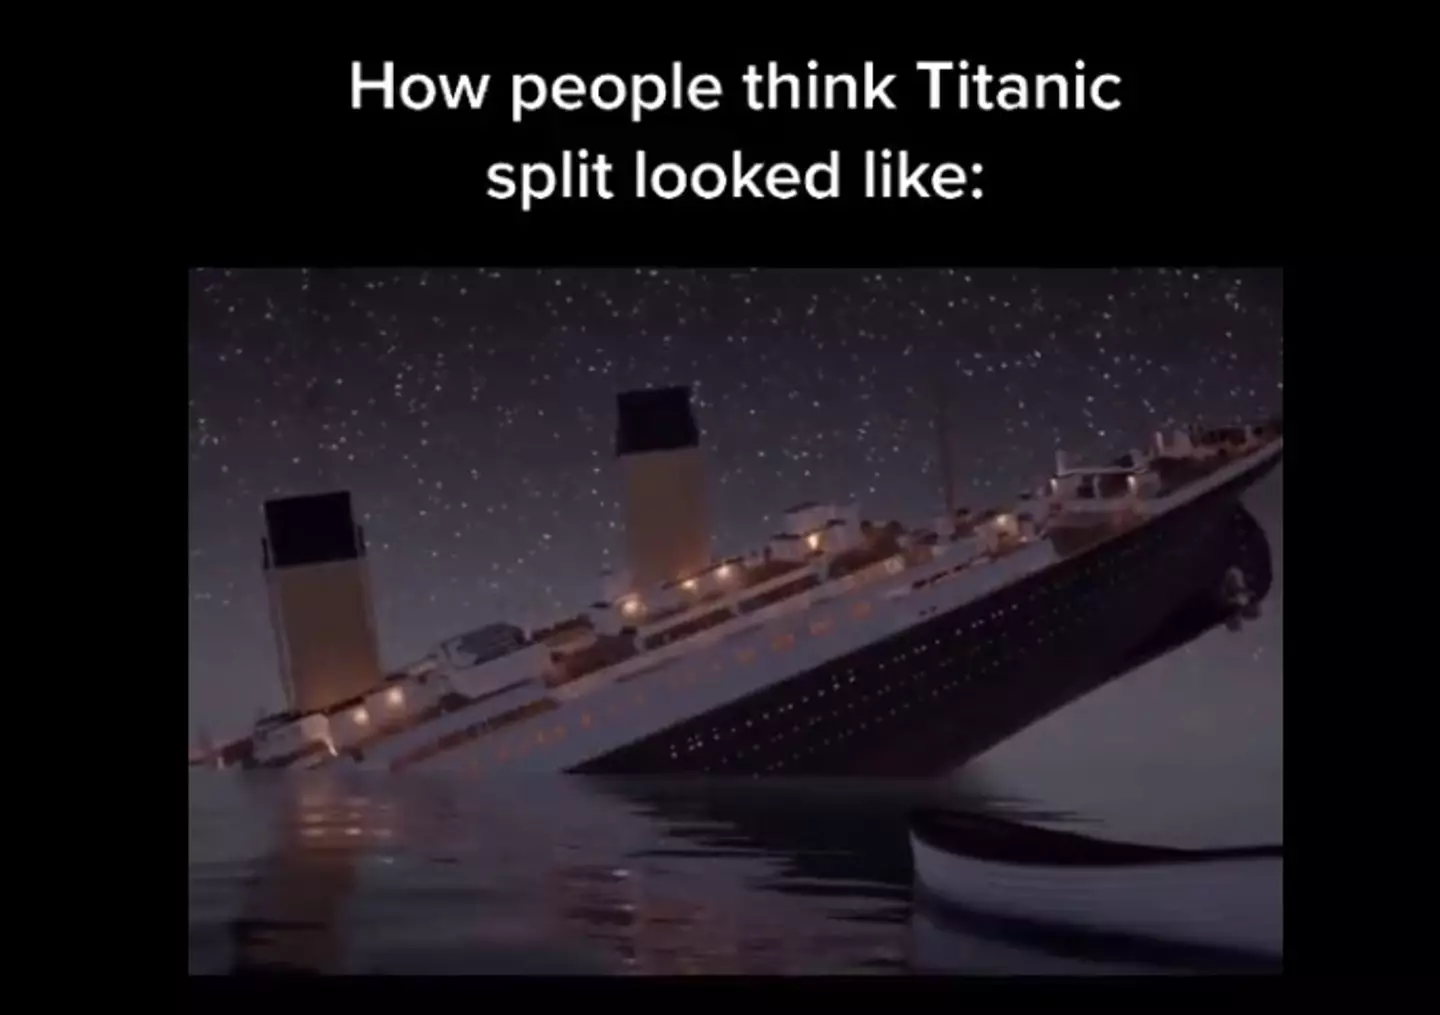 People often picture the Titanic sinking under the illumination of the night sky.